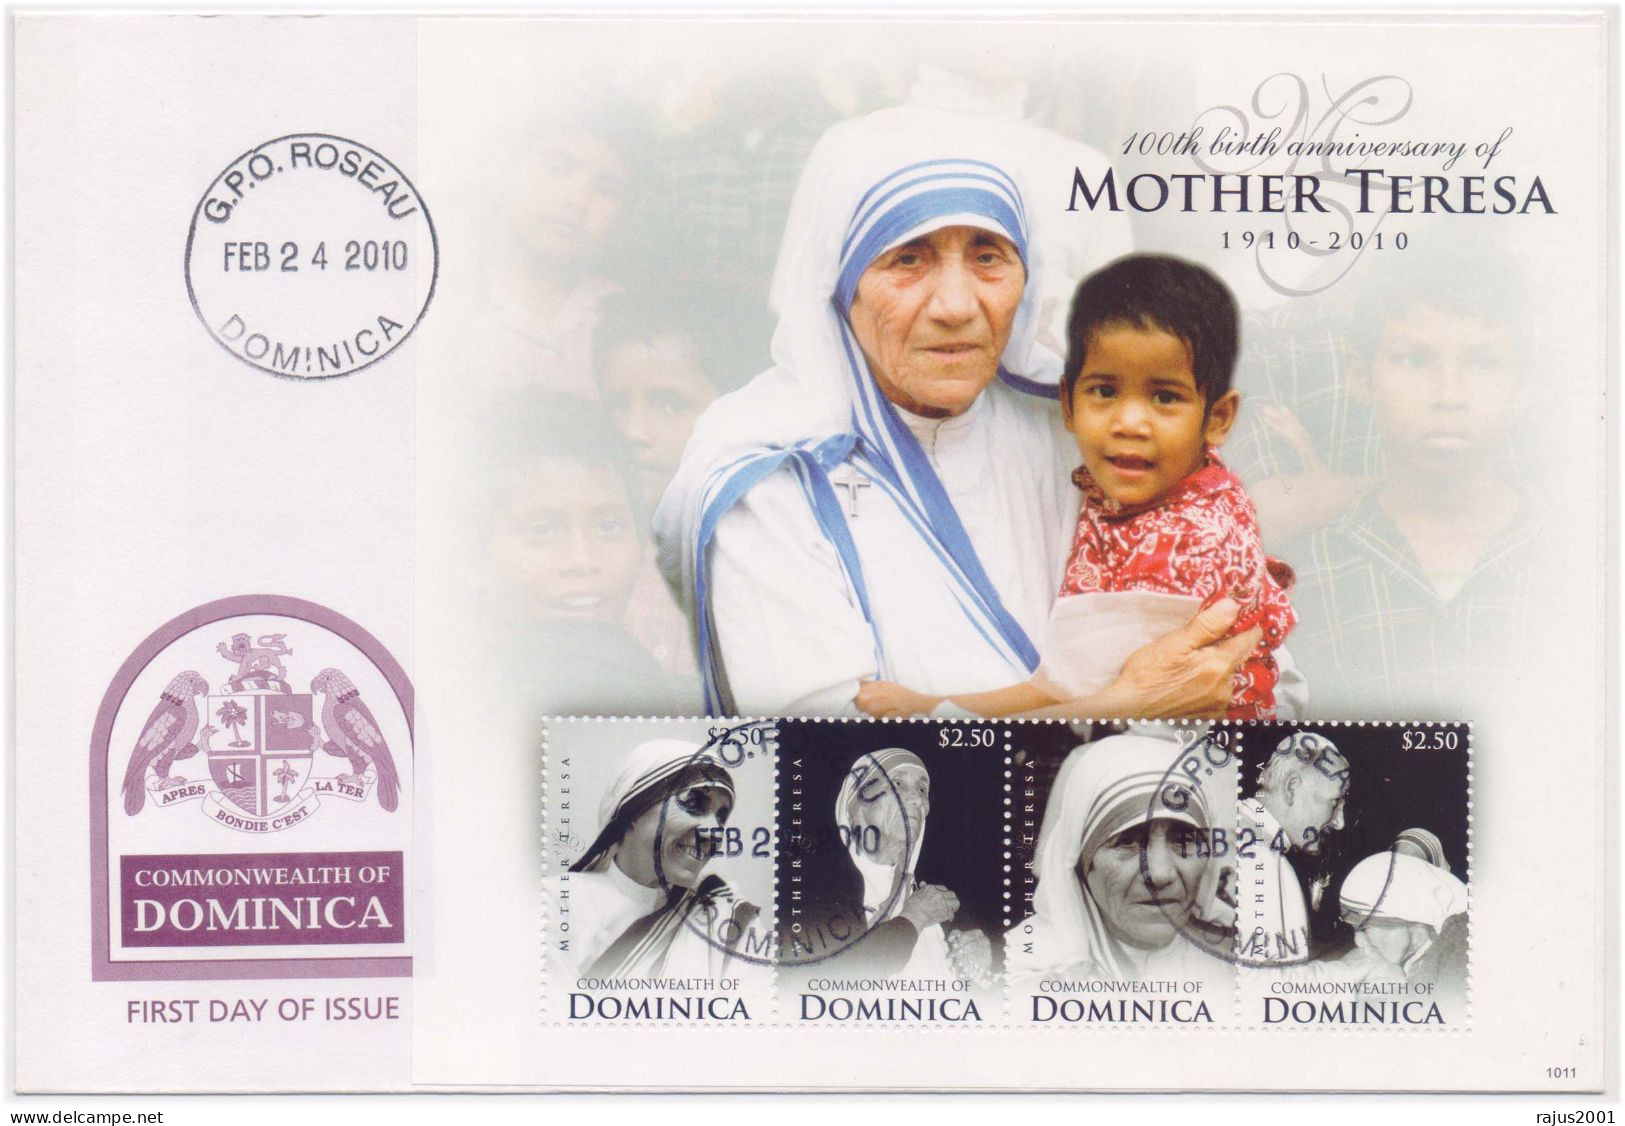 Mother Teresa With Child, Saint, Religion, Peace, Nobel Prize, Famous Women, Dominica Souvenir Sheet FDC - Mère Teresa